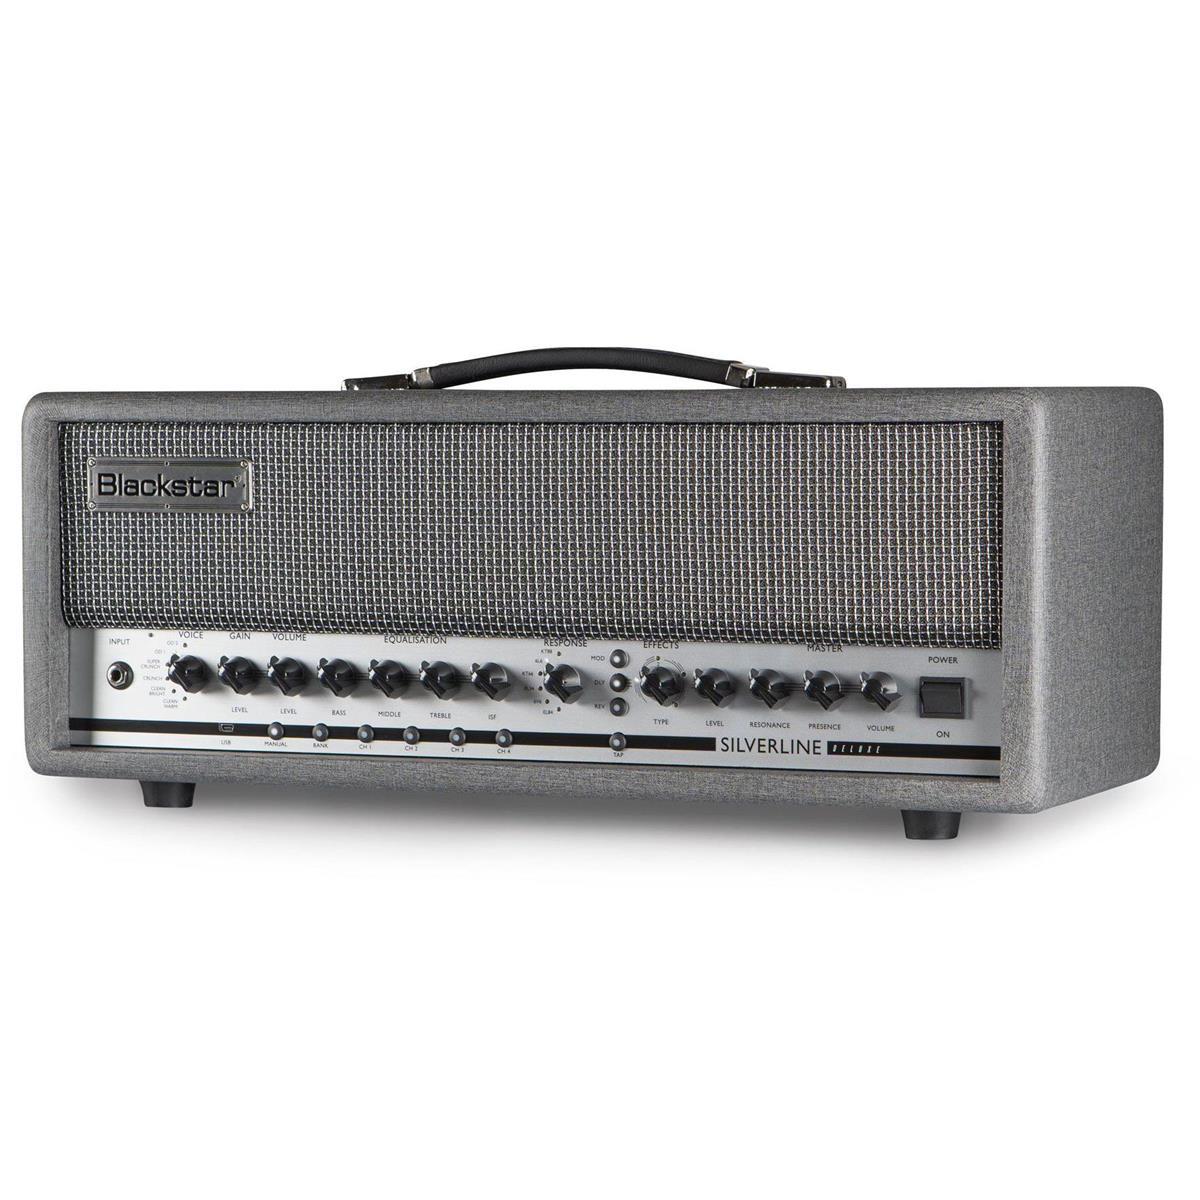 Image of Blackstar Silverline Deluxe 100W Amplifier Head for Digital Guitar